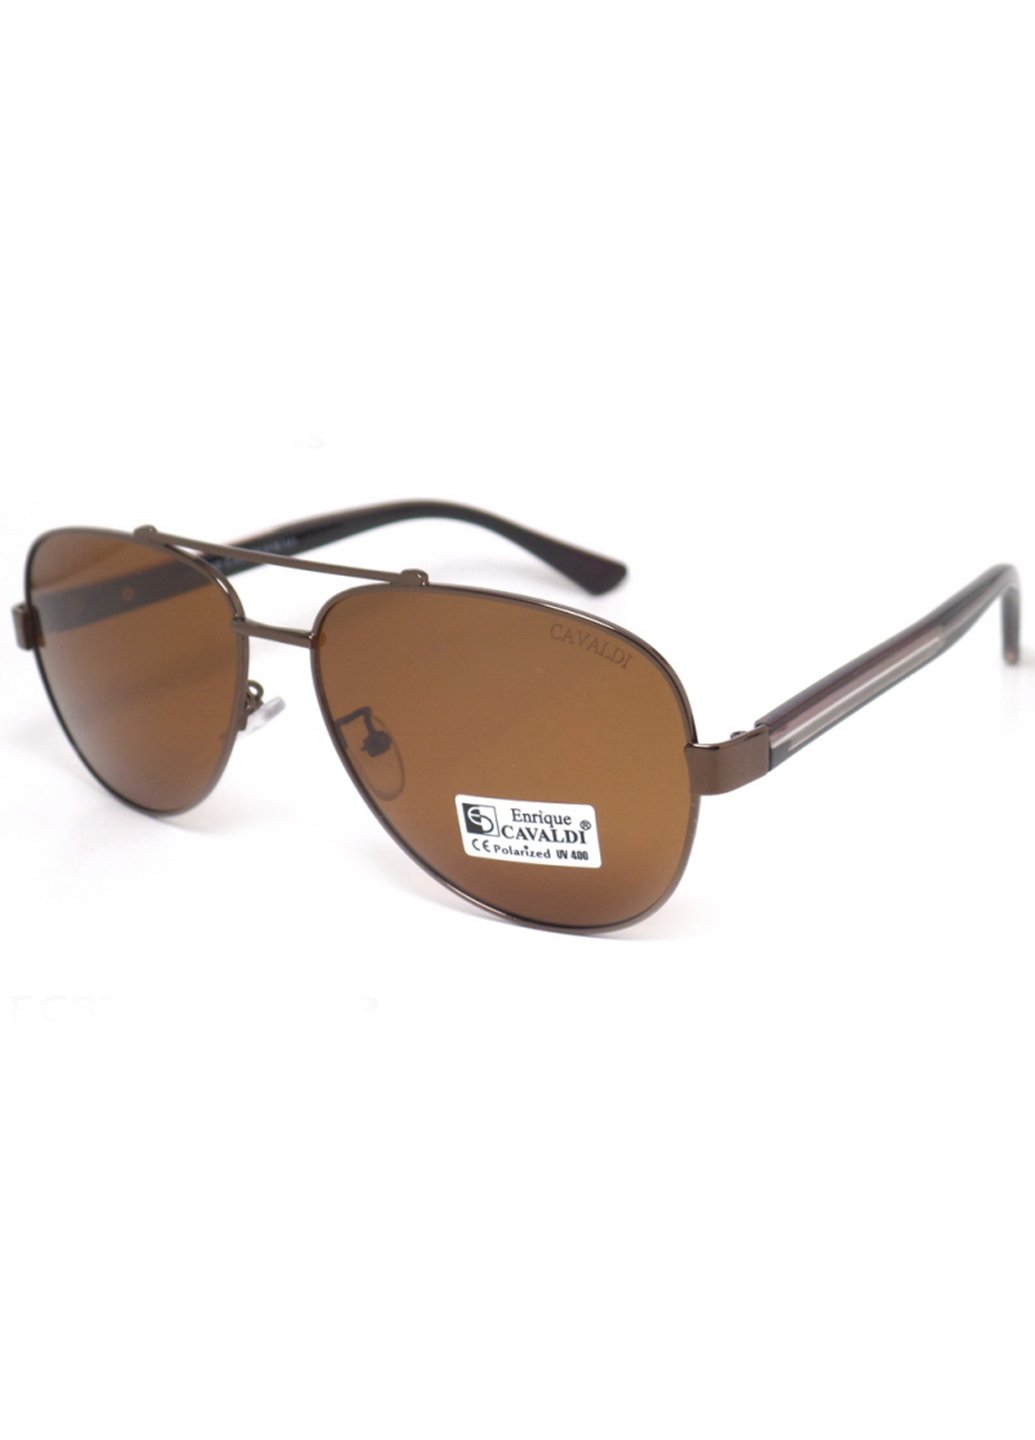 Купить Мужские солнцезащитные очки Enrique Cavaldi EC87050 150005 - Коричневый в интернет-магазине